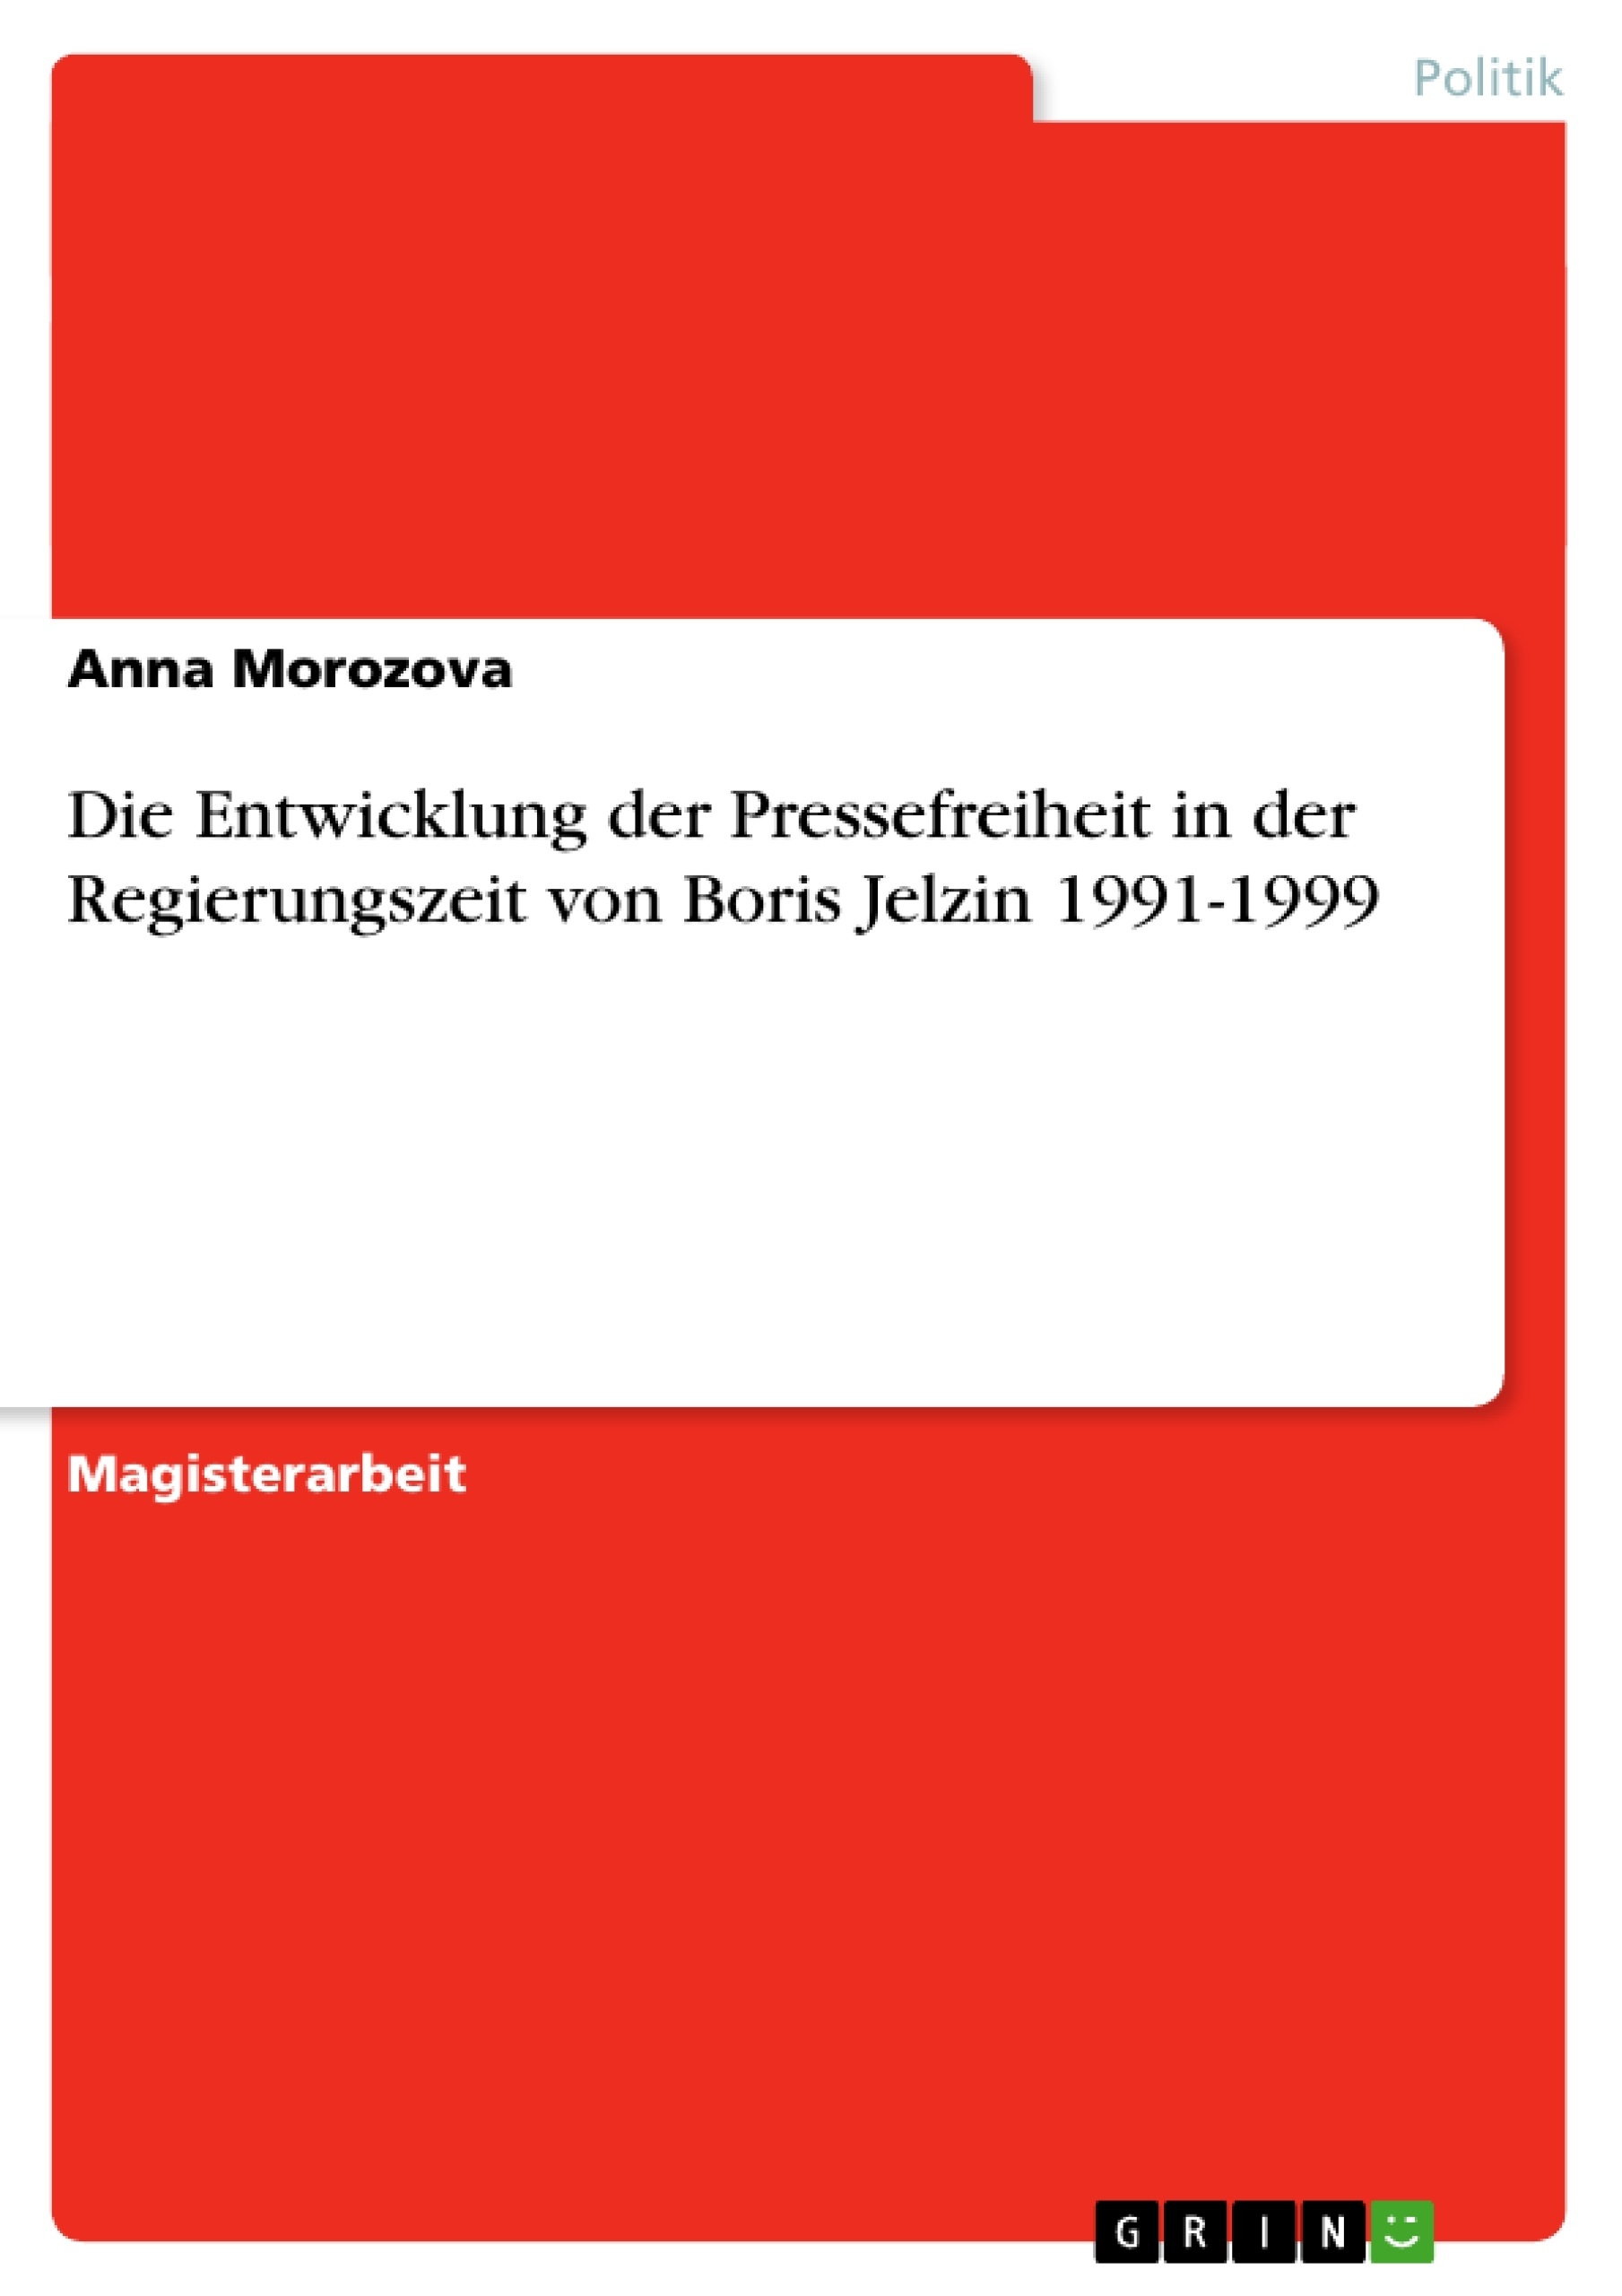 Título: Die Entwicklung der Pressefreiheit in der Regierungszeit von Boris Jelzin 1991-1999